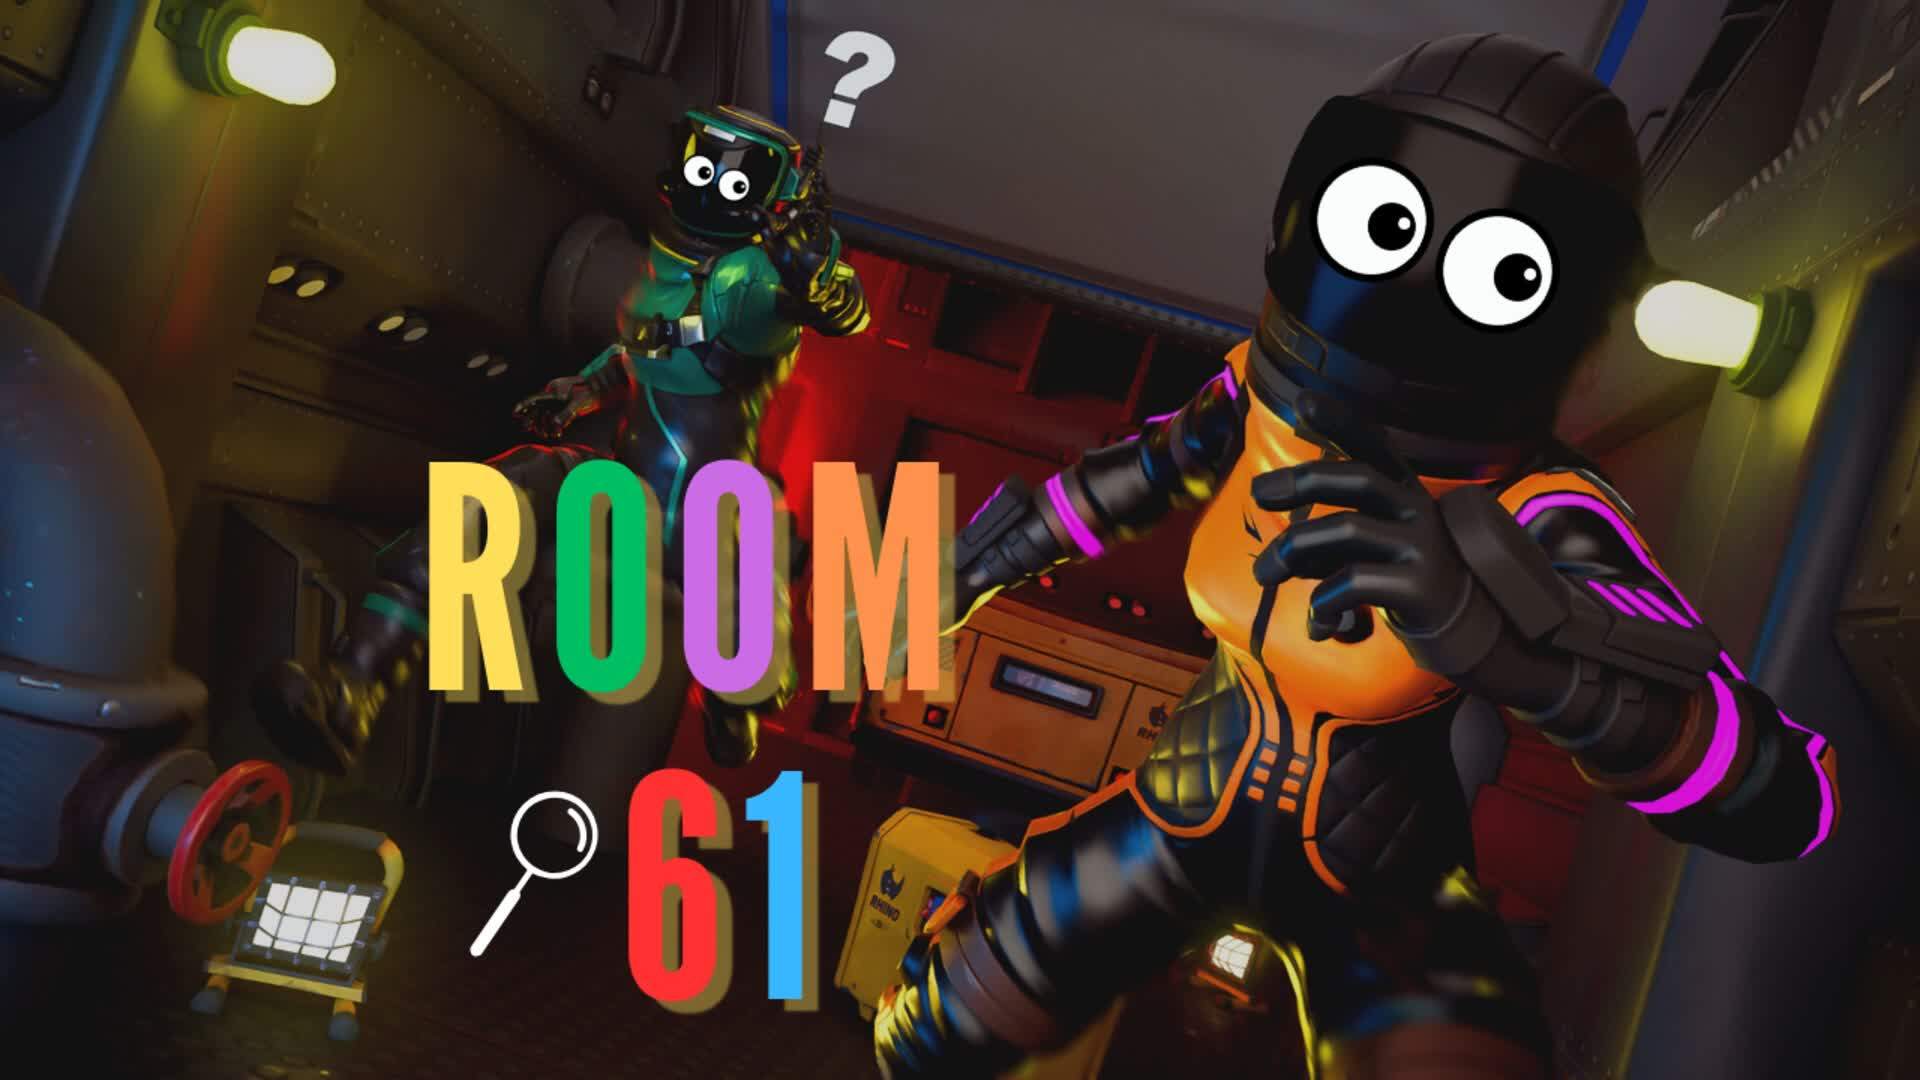 Room 61